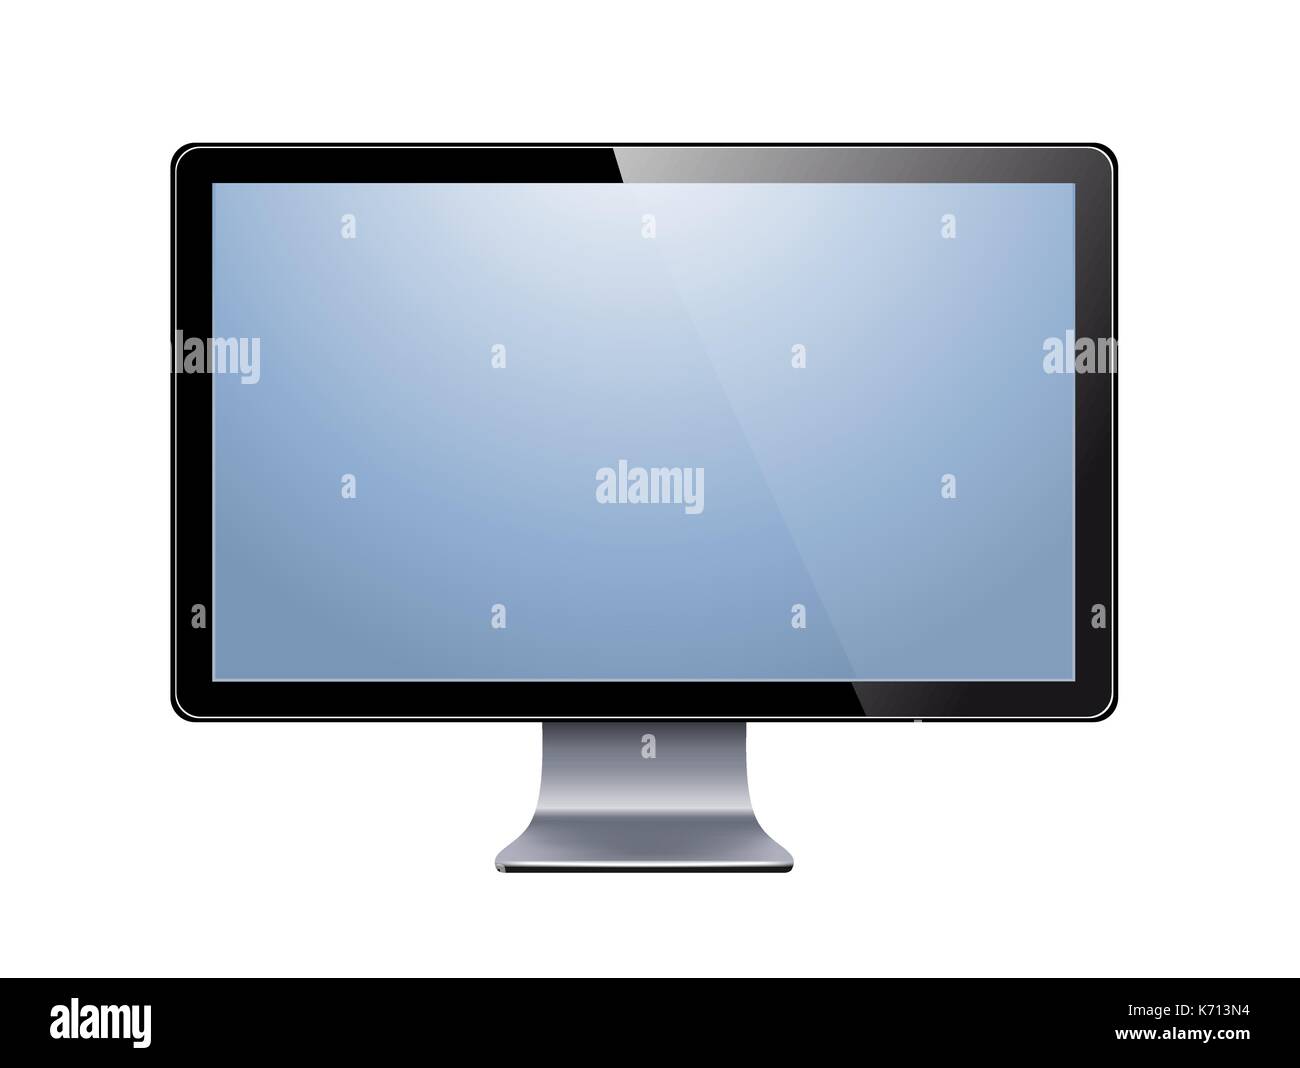 Lcd tv à écran large Banque d'images vectorielles - Page 2 - Alamy